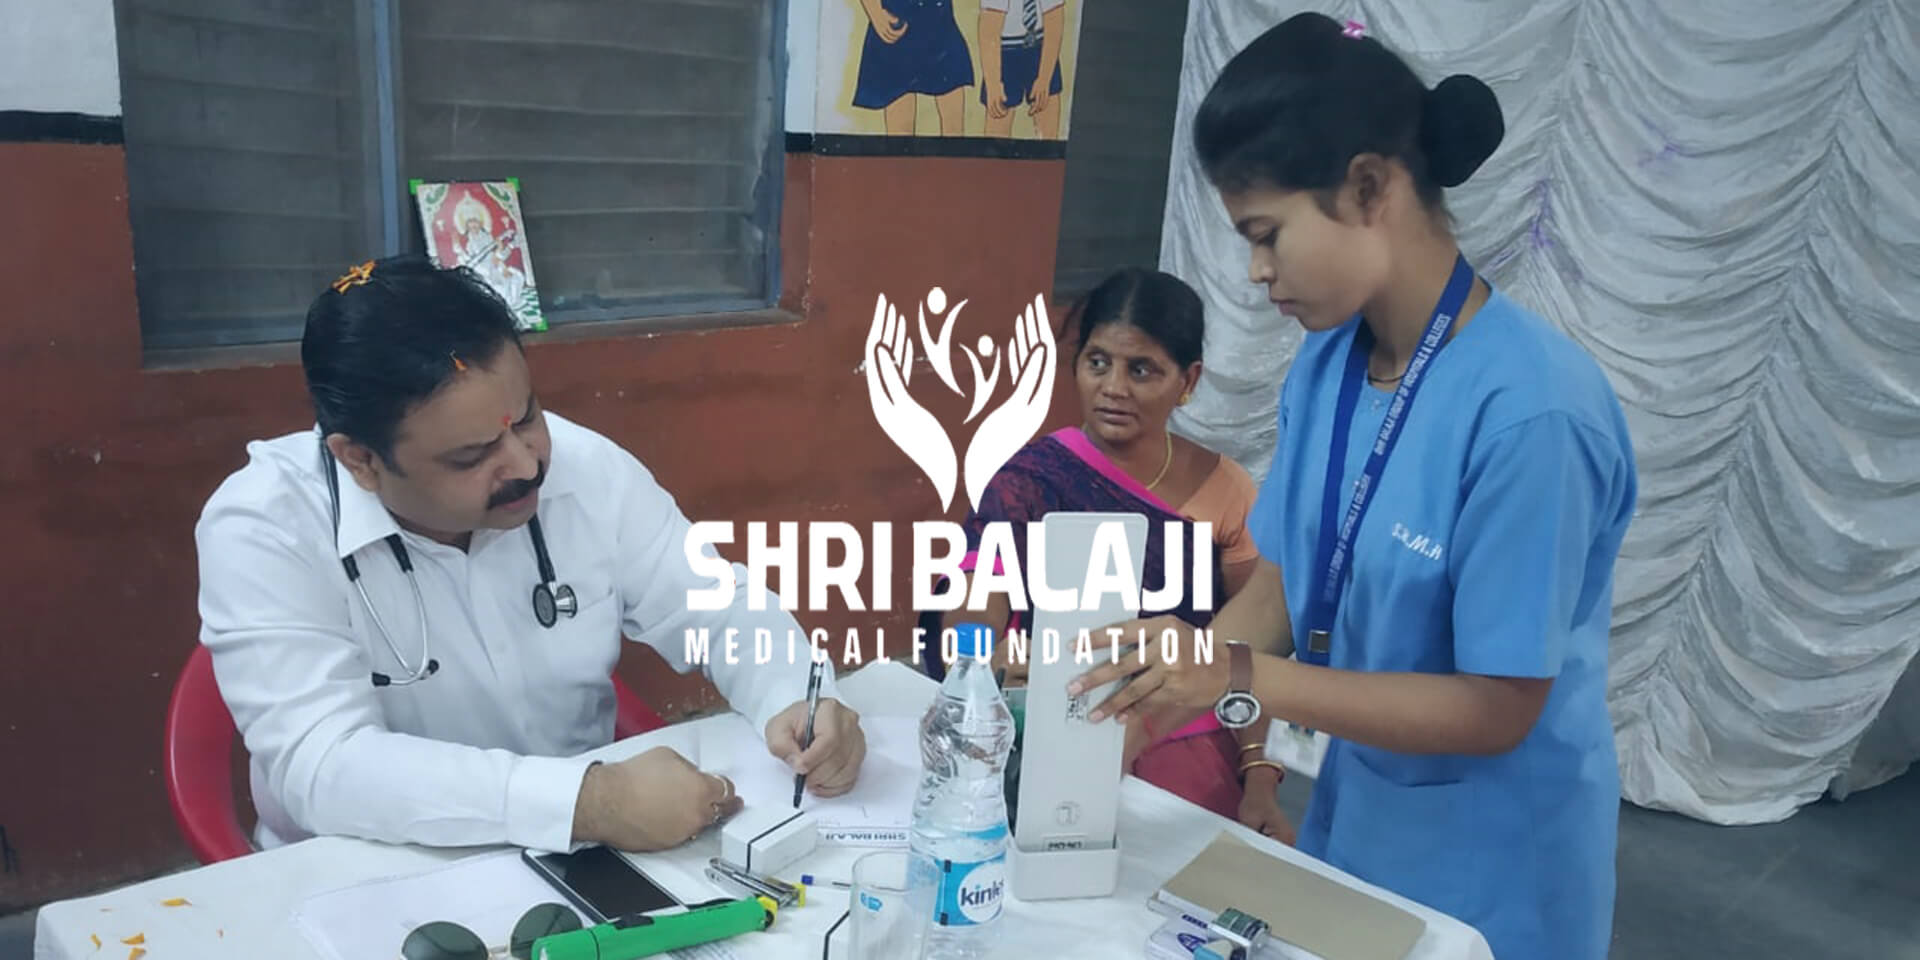 Shri Balaji Medical Foundation